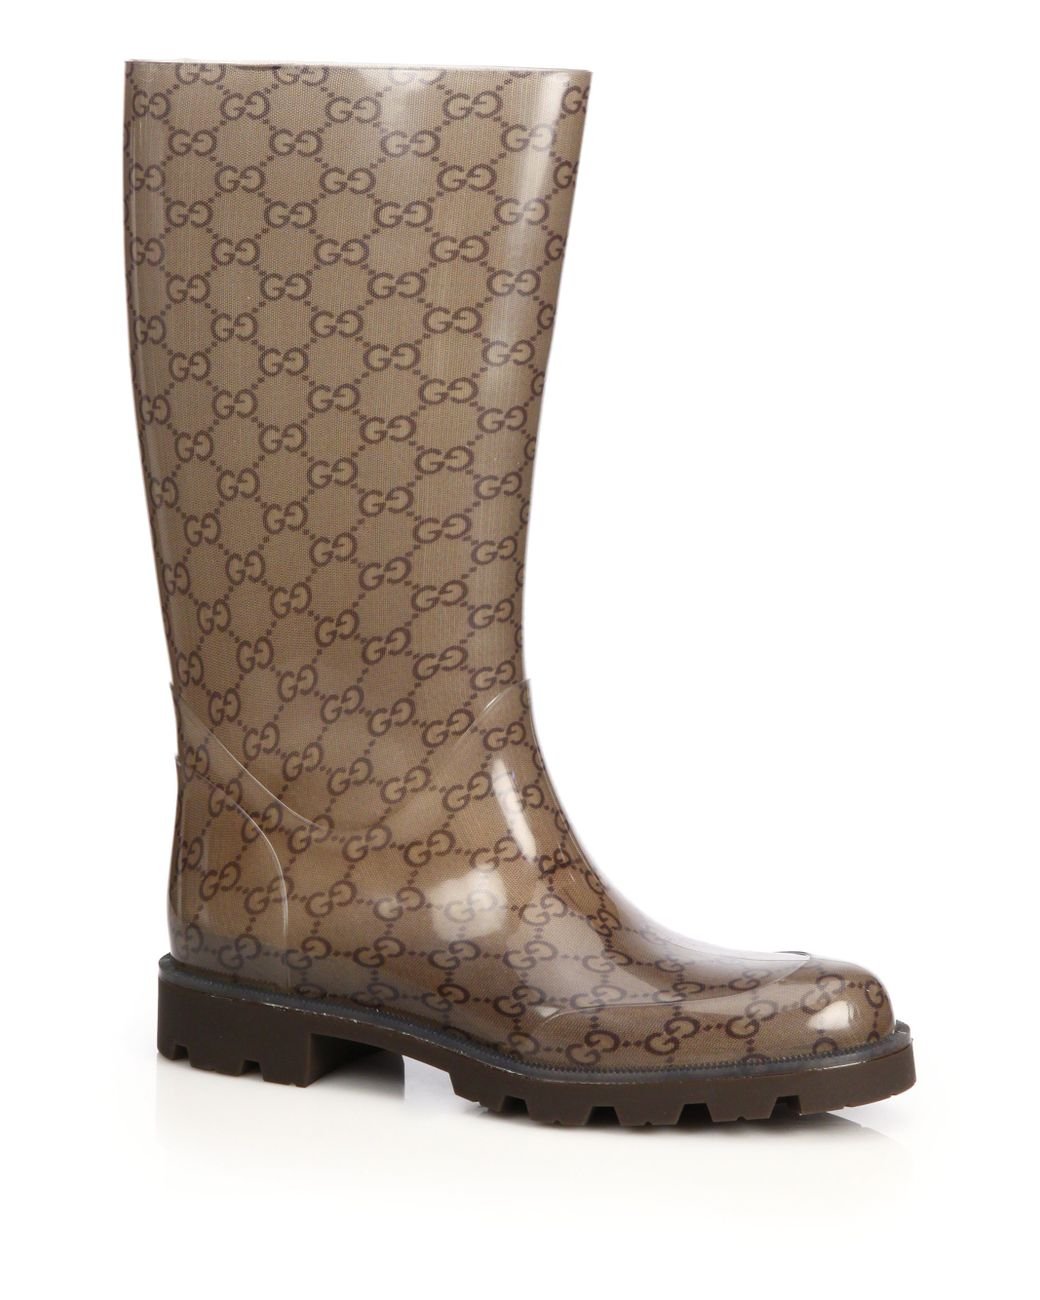 Gucci Edimburg Gg Rain Boots in Brown | Lyst